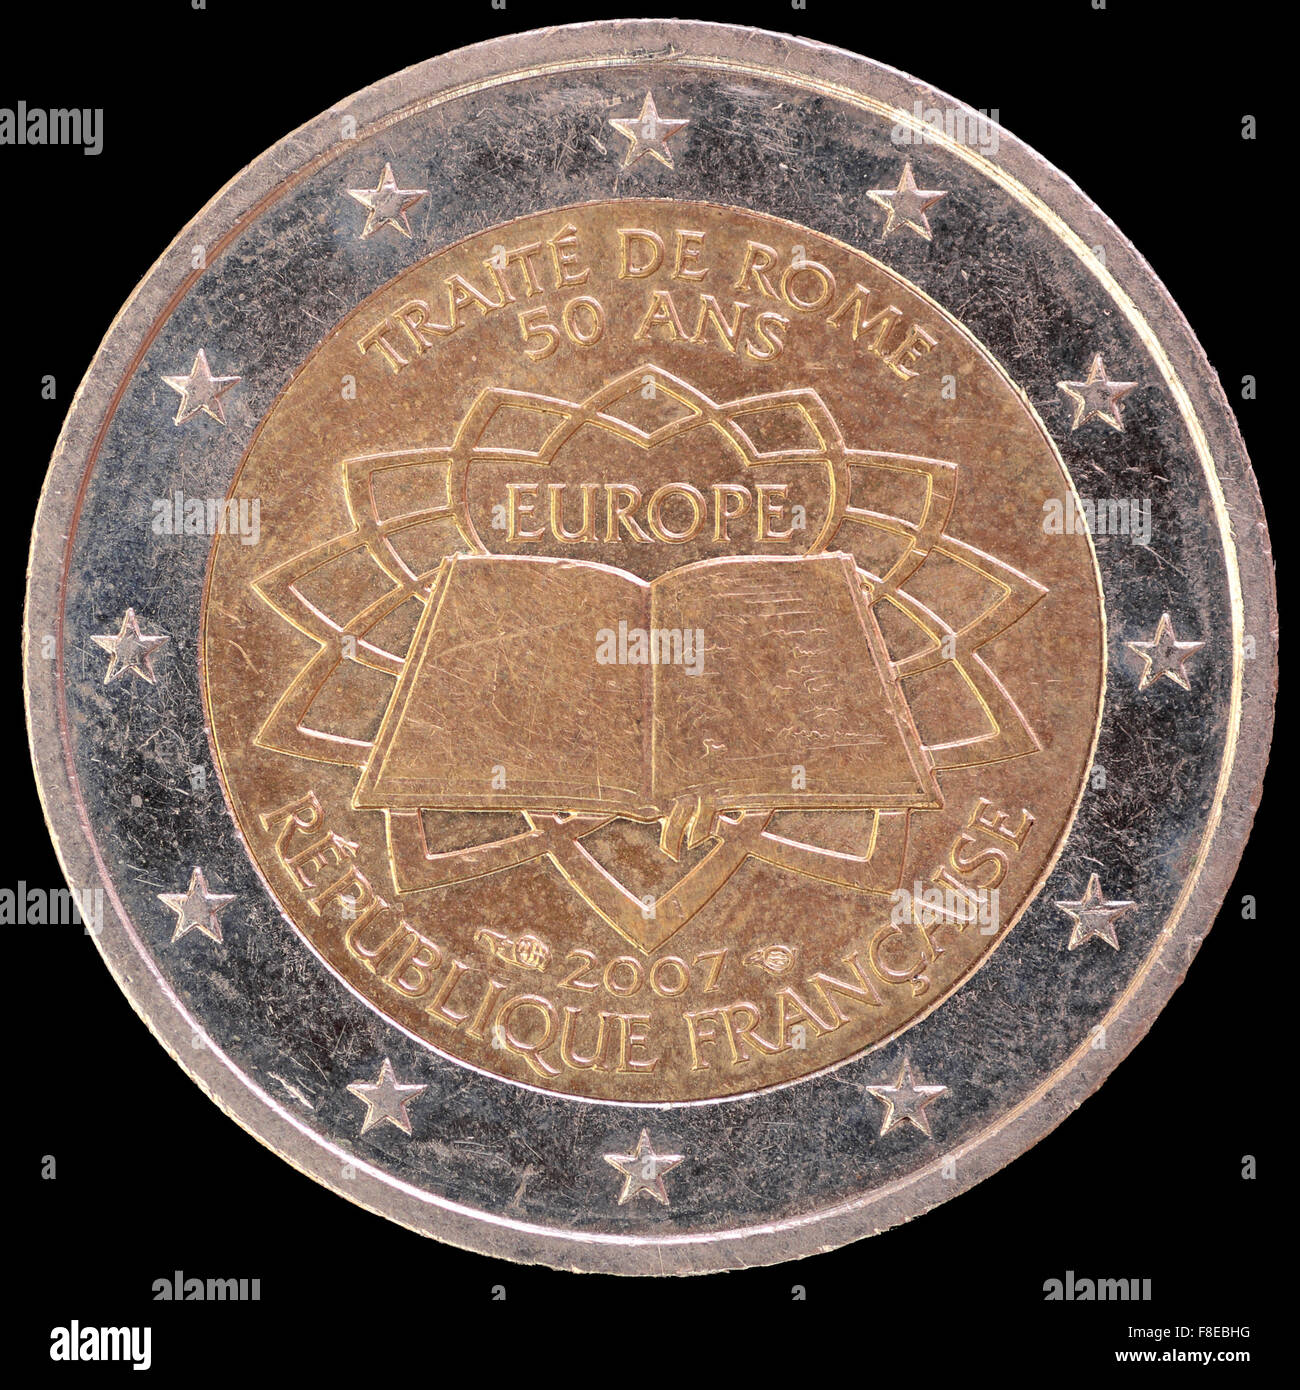 2 Euro Memorial coin Federal Council